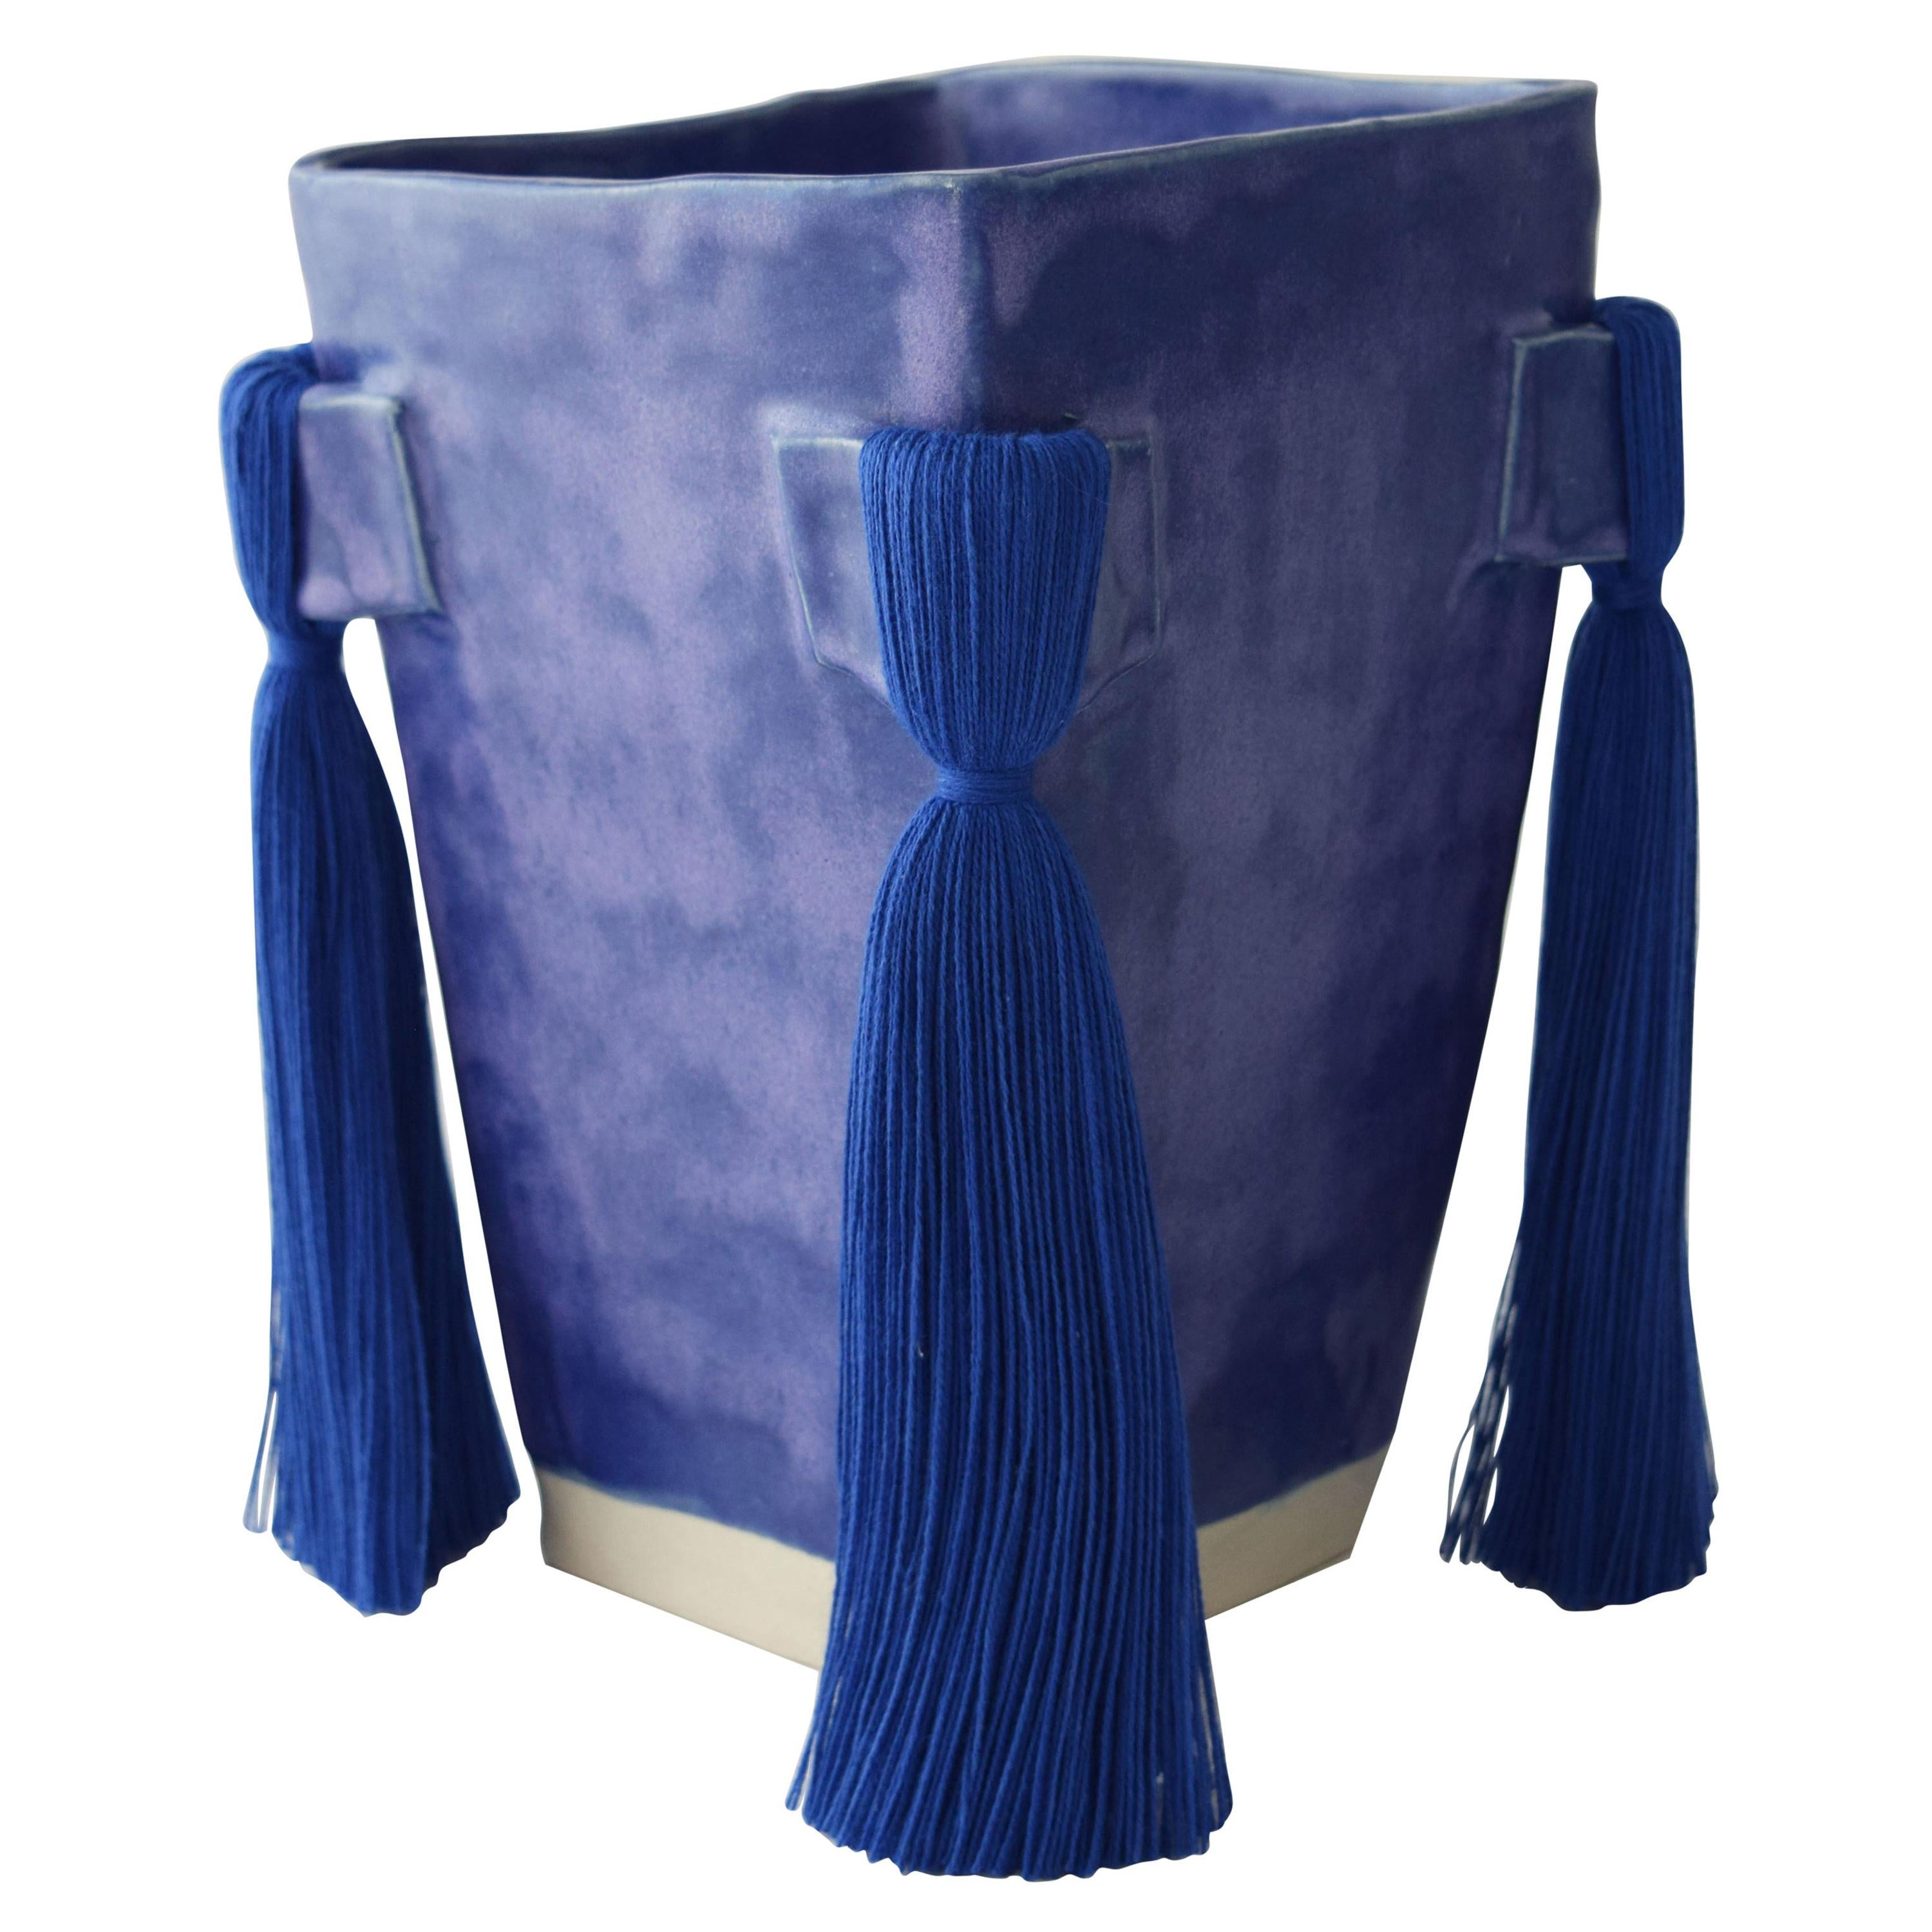 Handmade Ceramic Vase with Blue Glaze, Blue Cotton Fringe